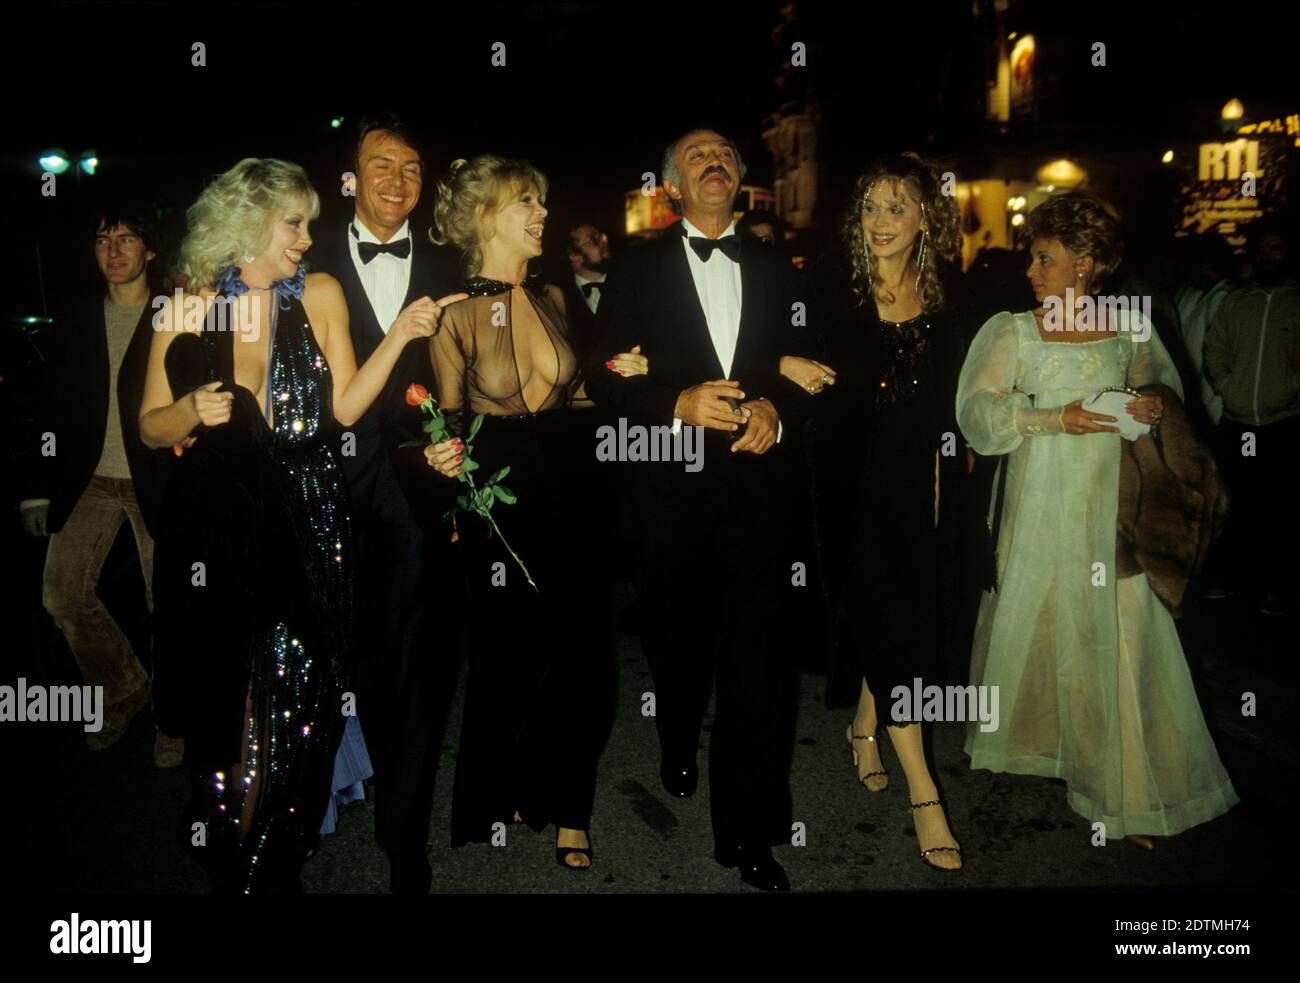 Jacques Medecin Ex-Bürgermeister von Nizza Südfrankreich nach einer Premiere Cannes Film Festival Frau auf seinem rechten Arm mit roter Rose ist Bobbie Bresee eine amerikanische Filmschauspielerin und Starlet. Cannes Frankreich 1980 HOMER SYKES Stockfoto